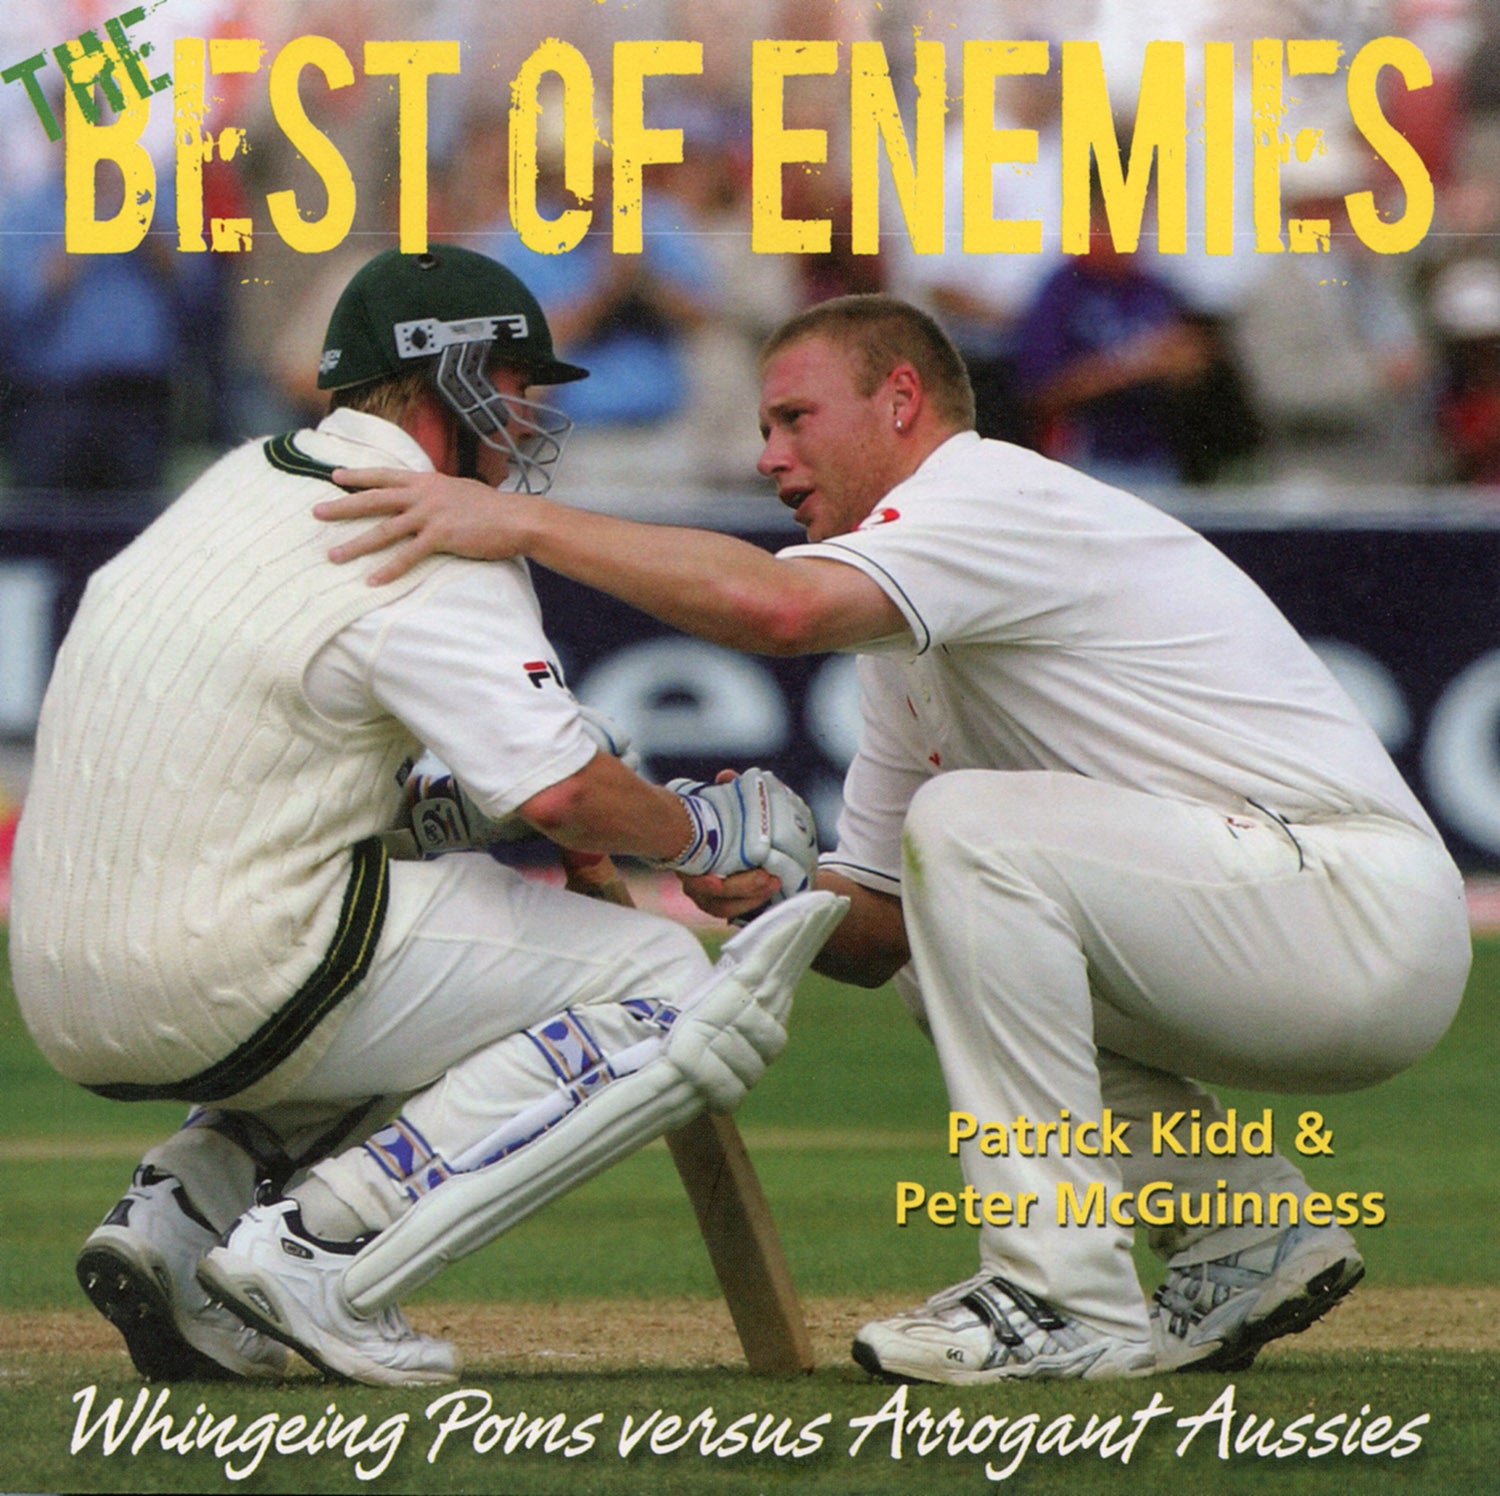 The Best of Enemies – Whingeing Poms versus Arrogant Aussies